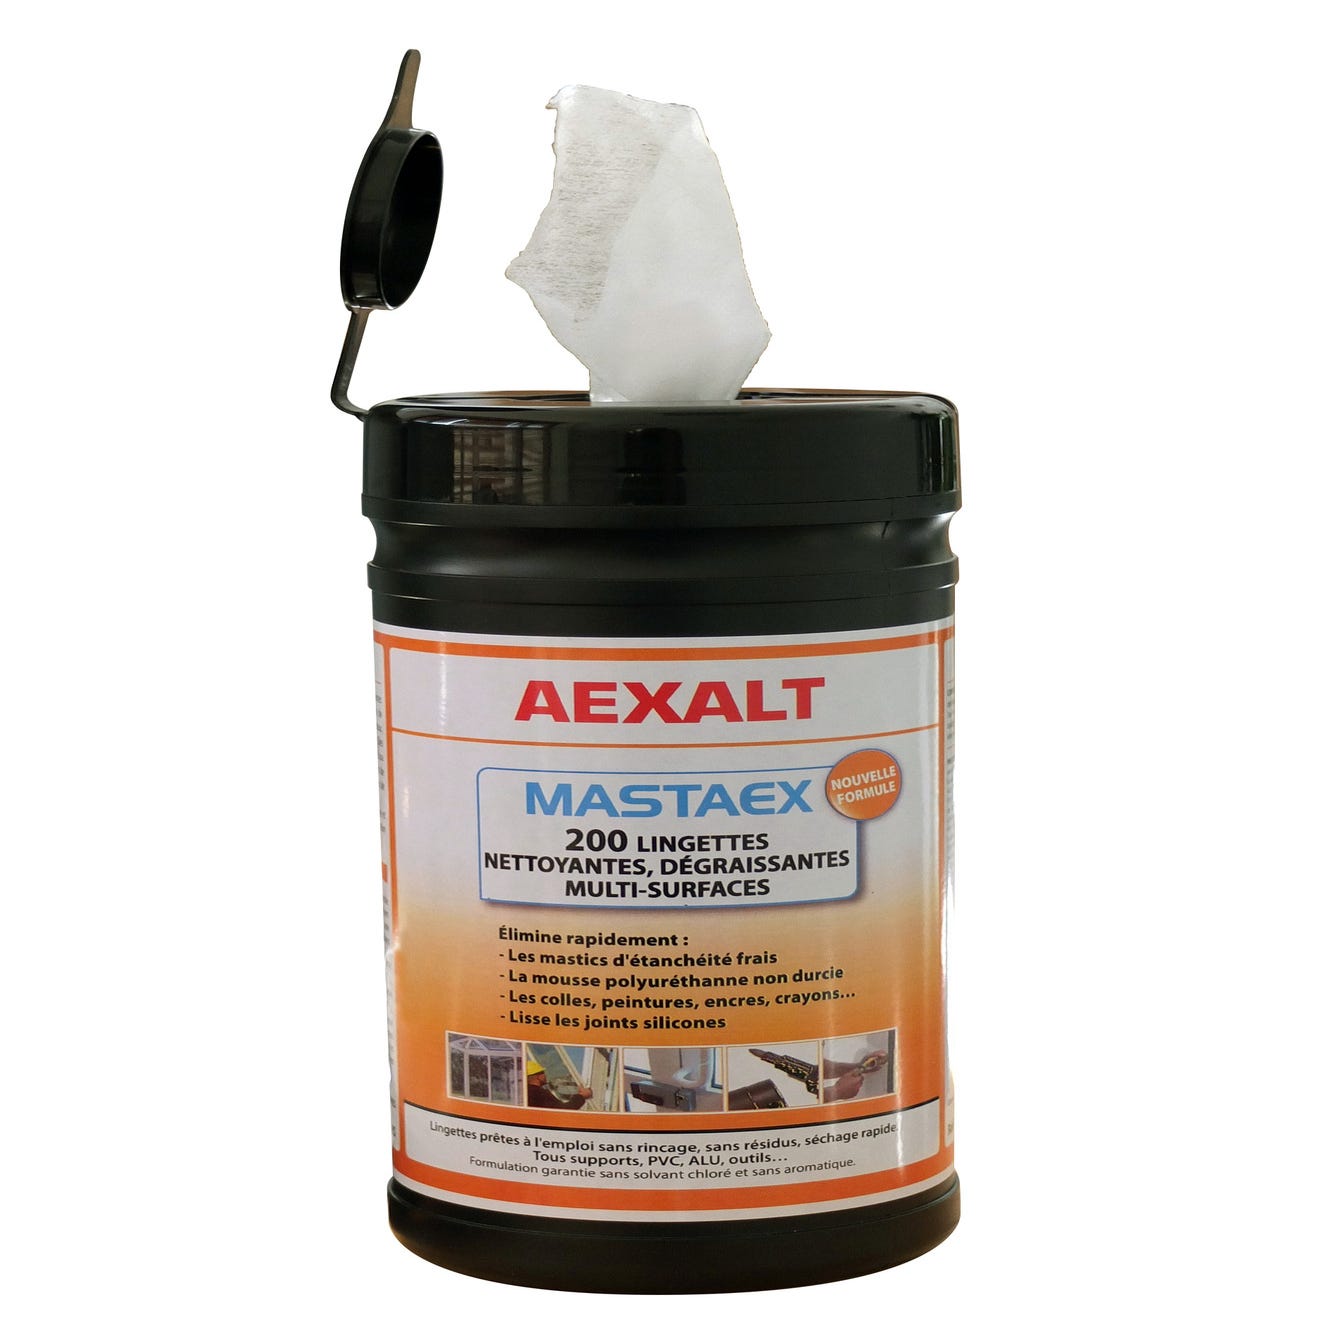 Pot de 200 lingettes nettoyantes dégraissantes multi-surfaces Mastaex - AEXALT 1